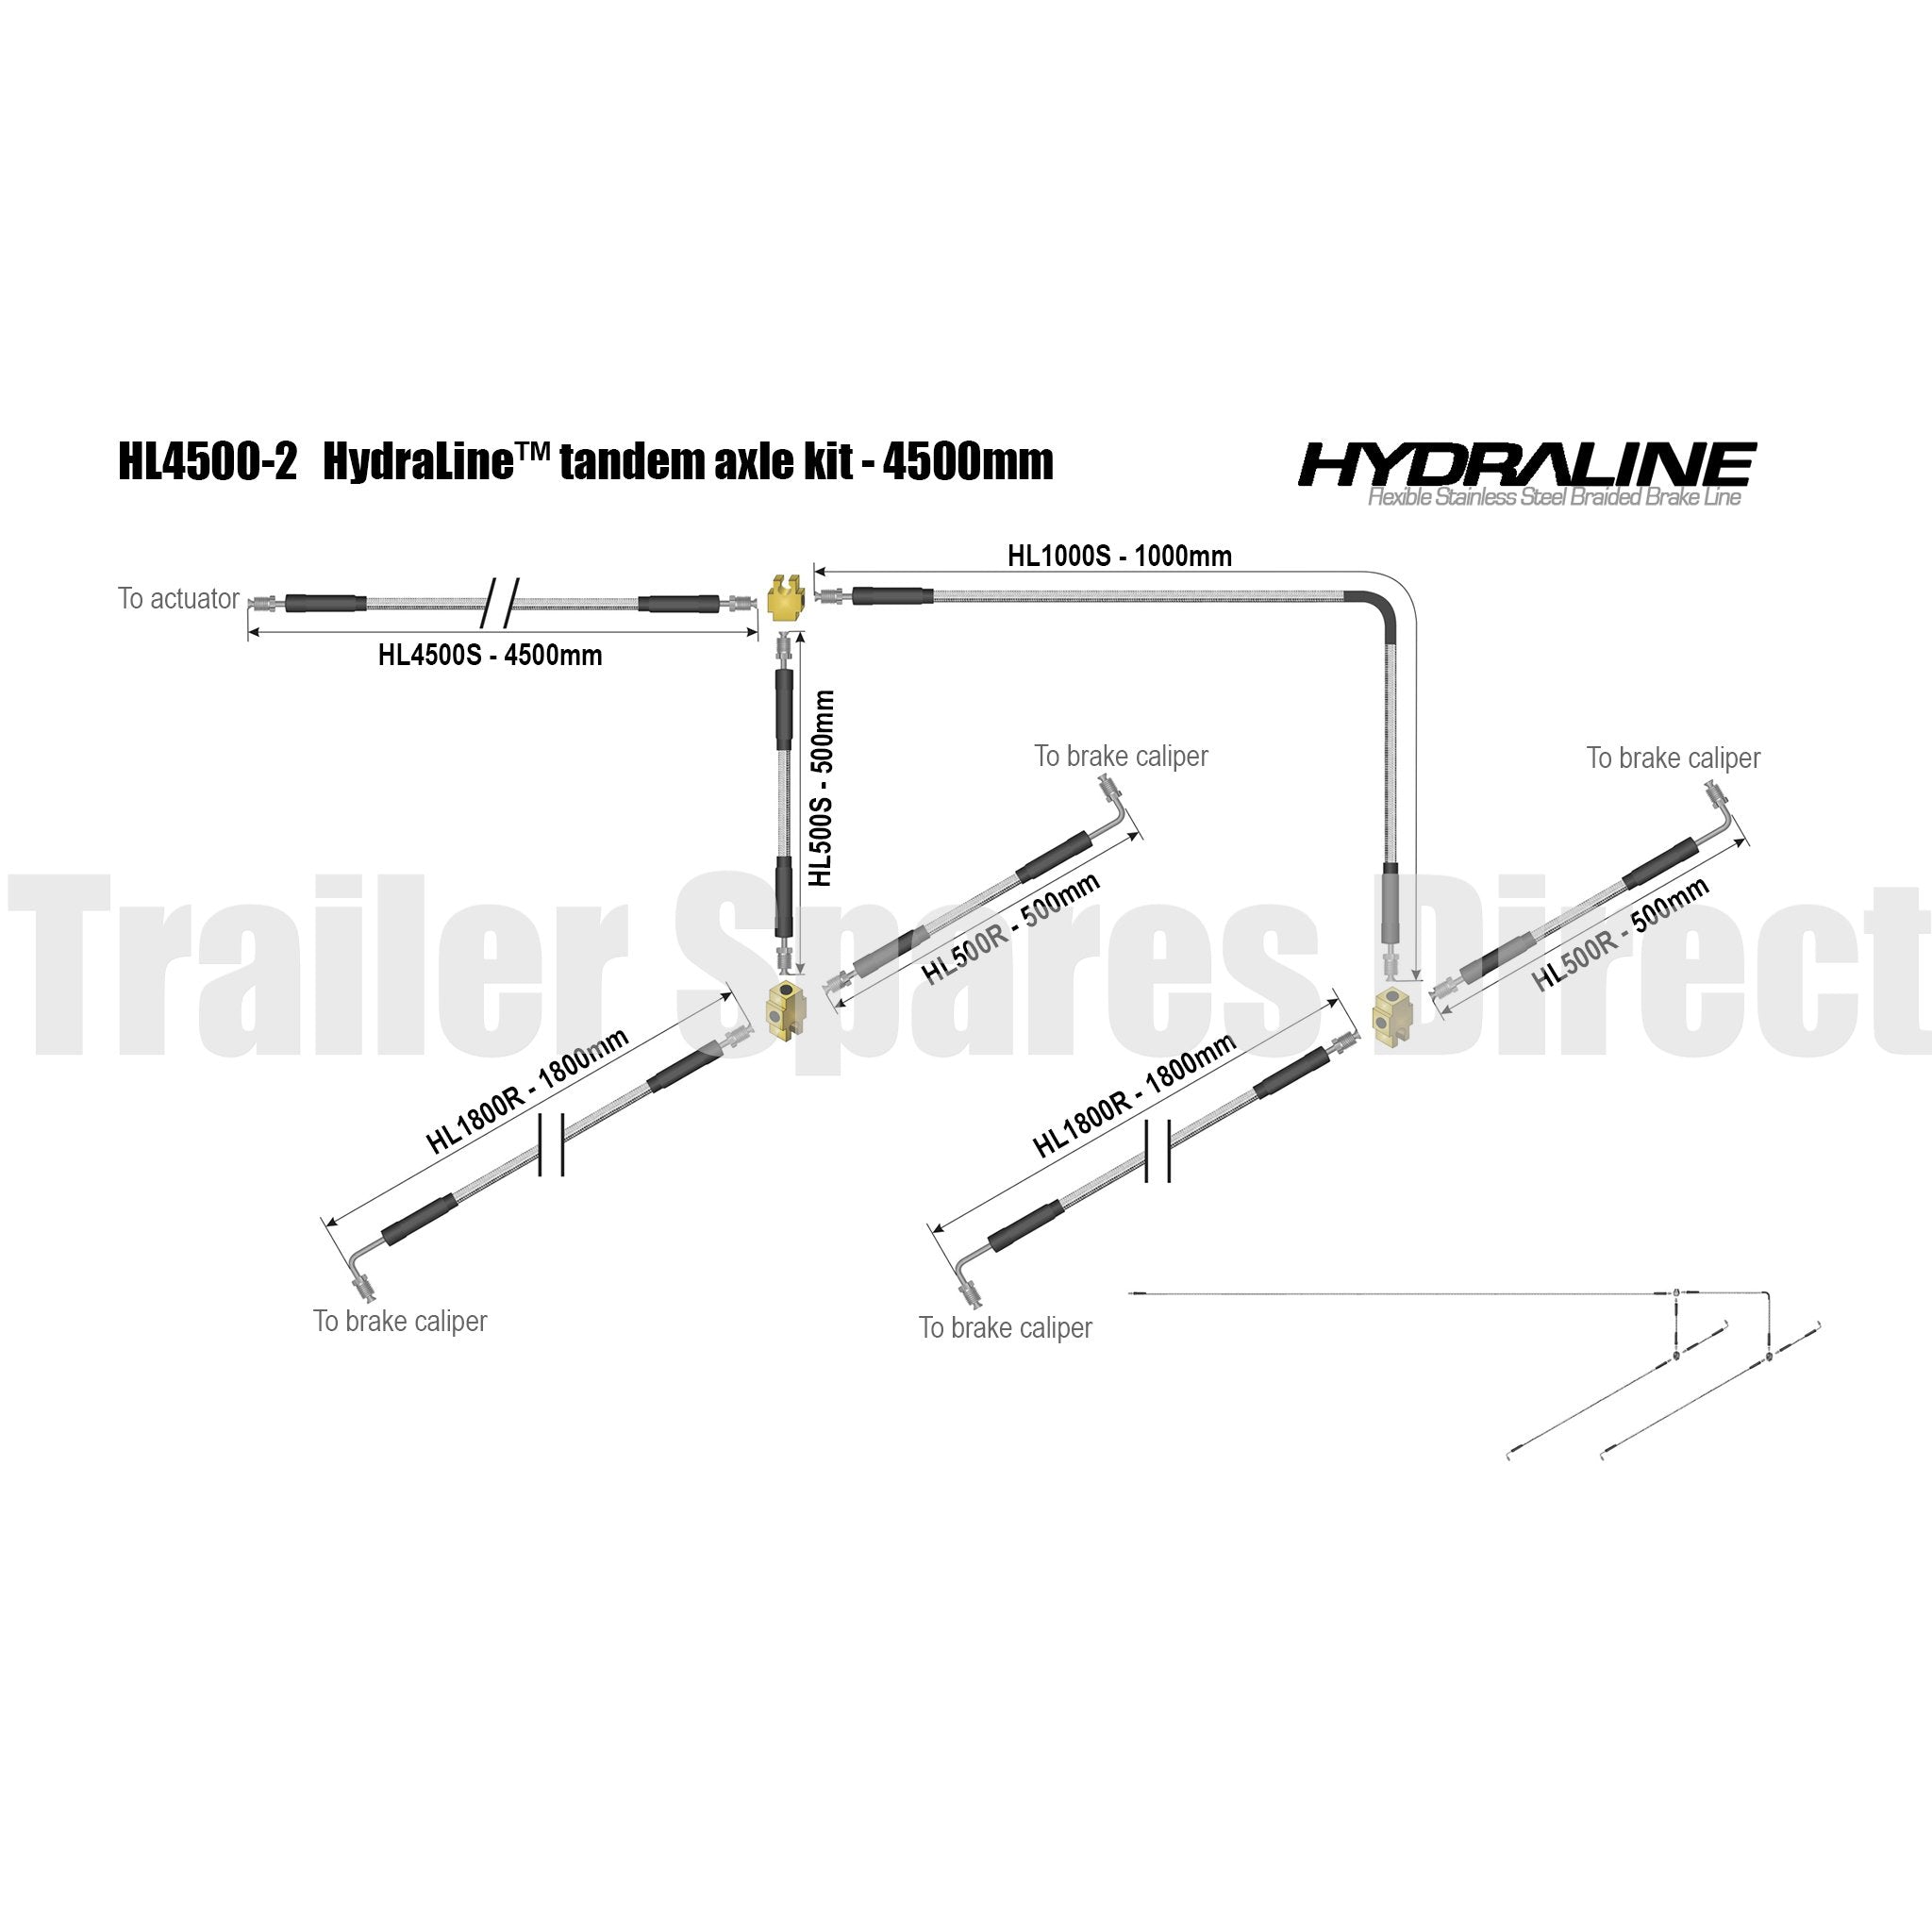 Hydraline kit 4500mm tandem axle diagram